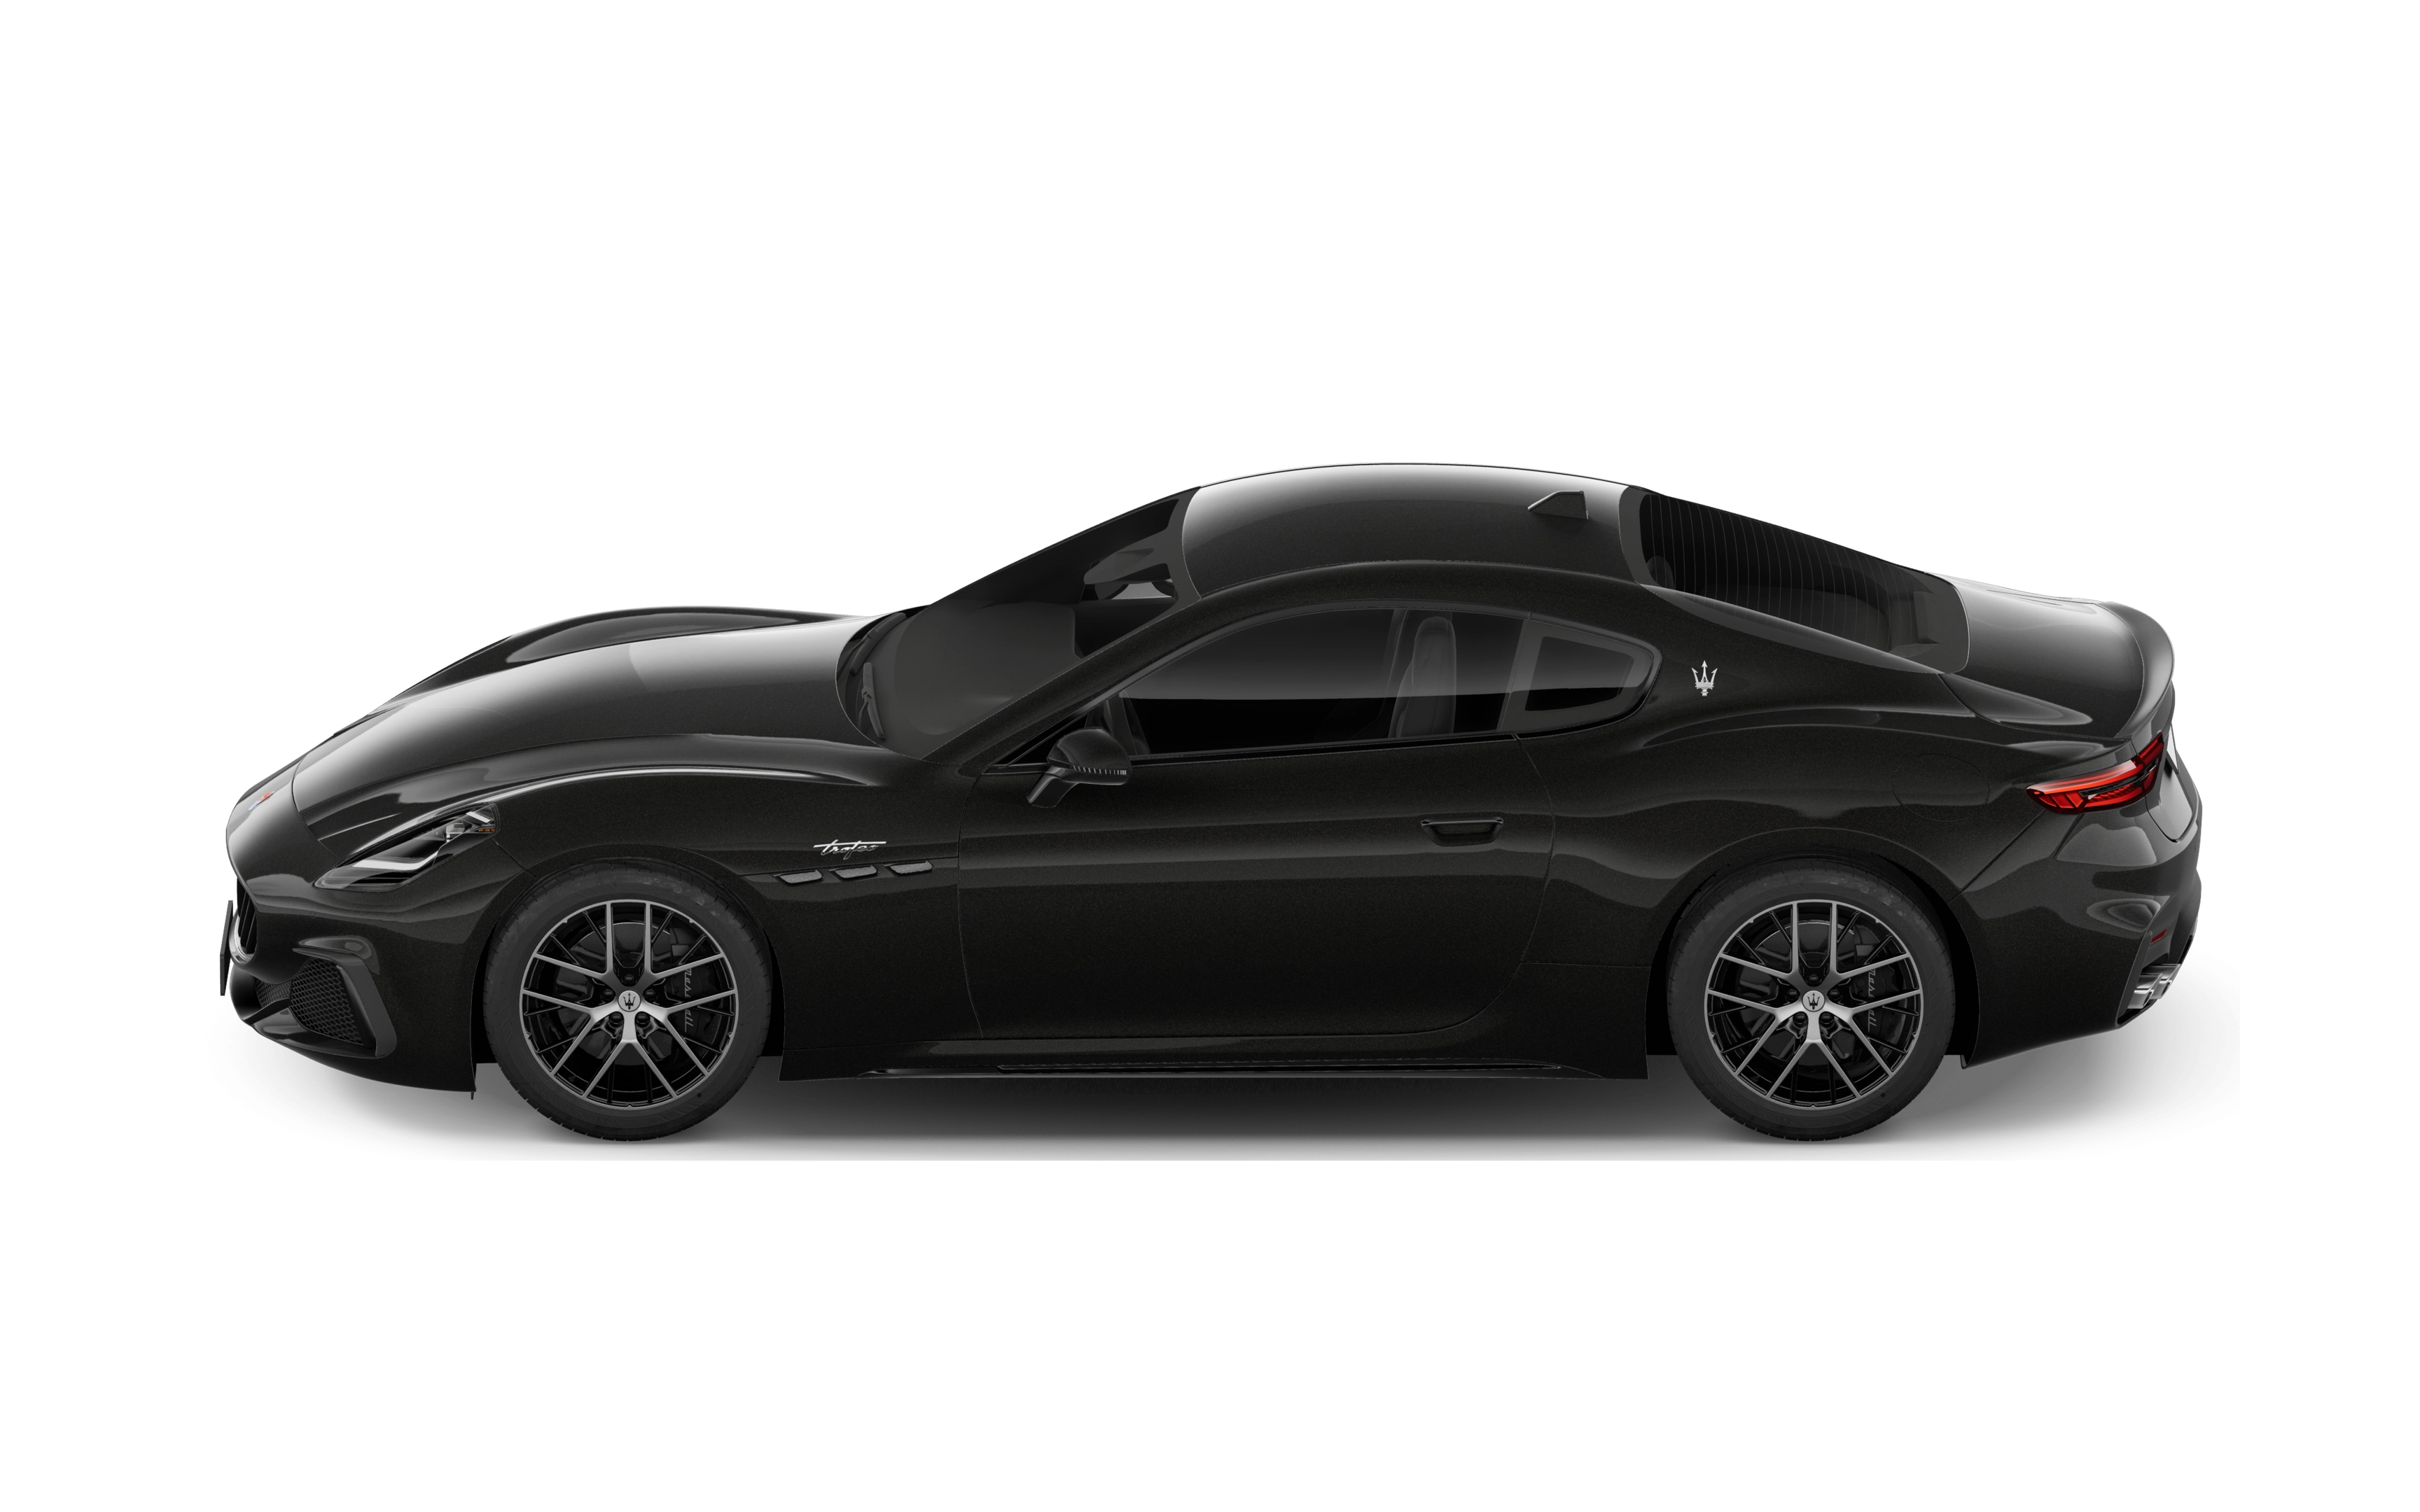 Maserati granturismo coupe 3.0 v6 modena 2 doors auto